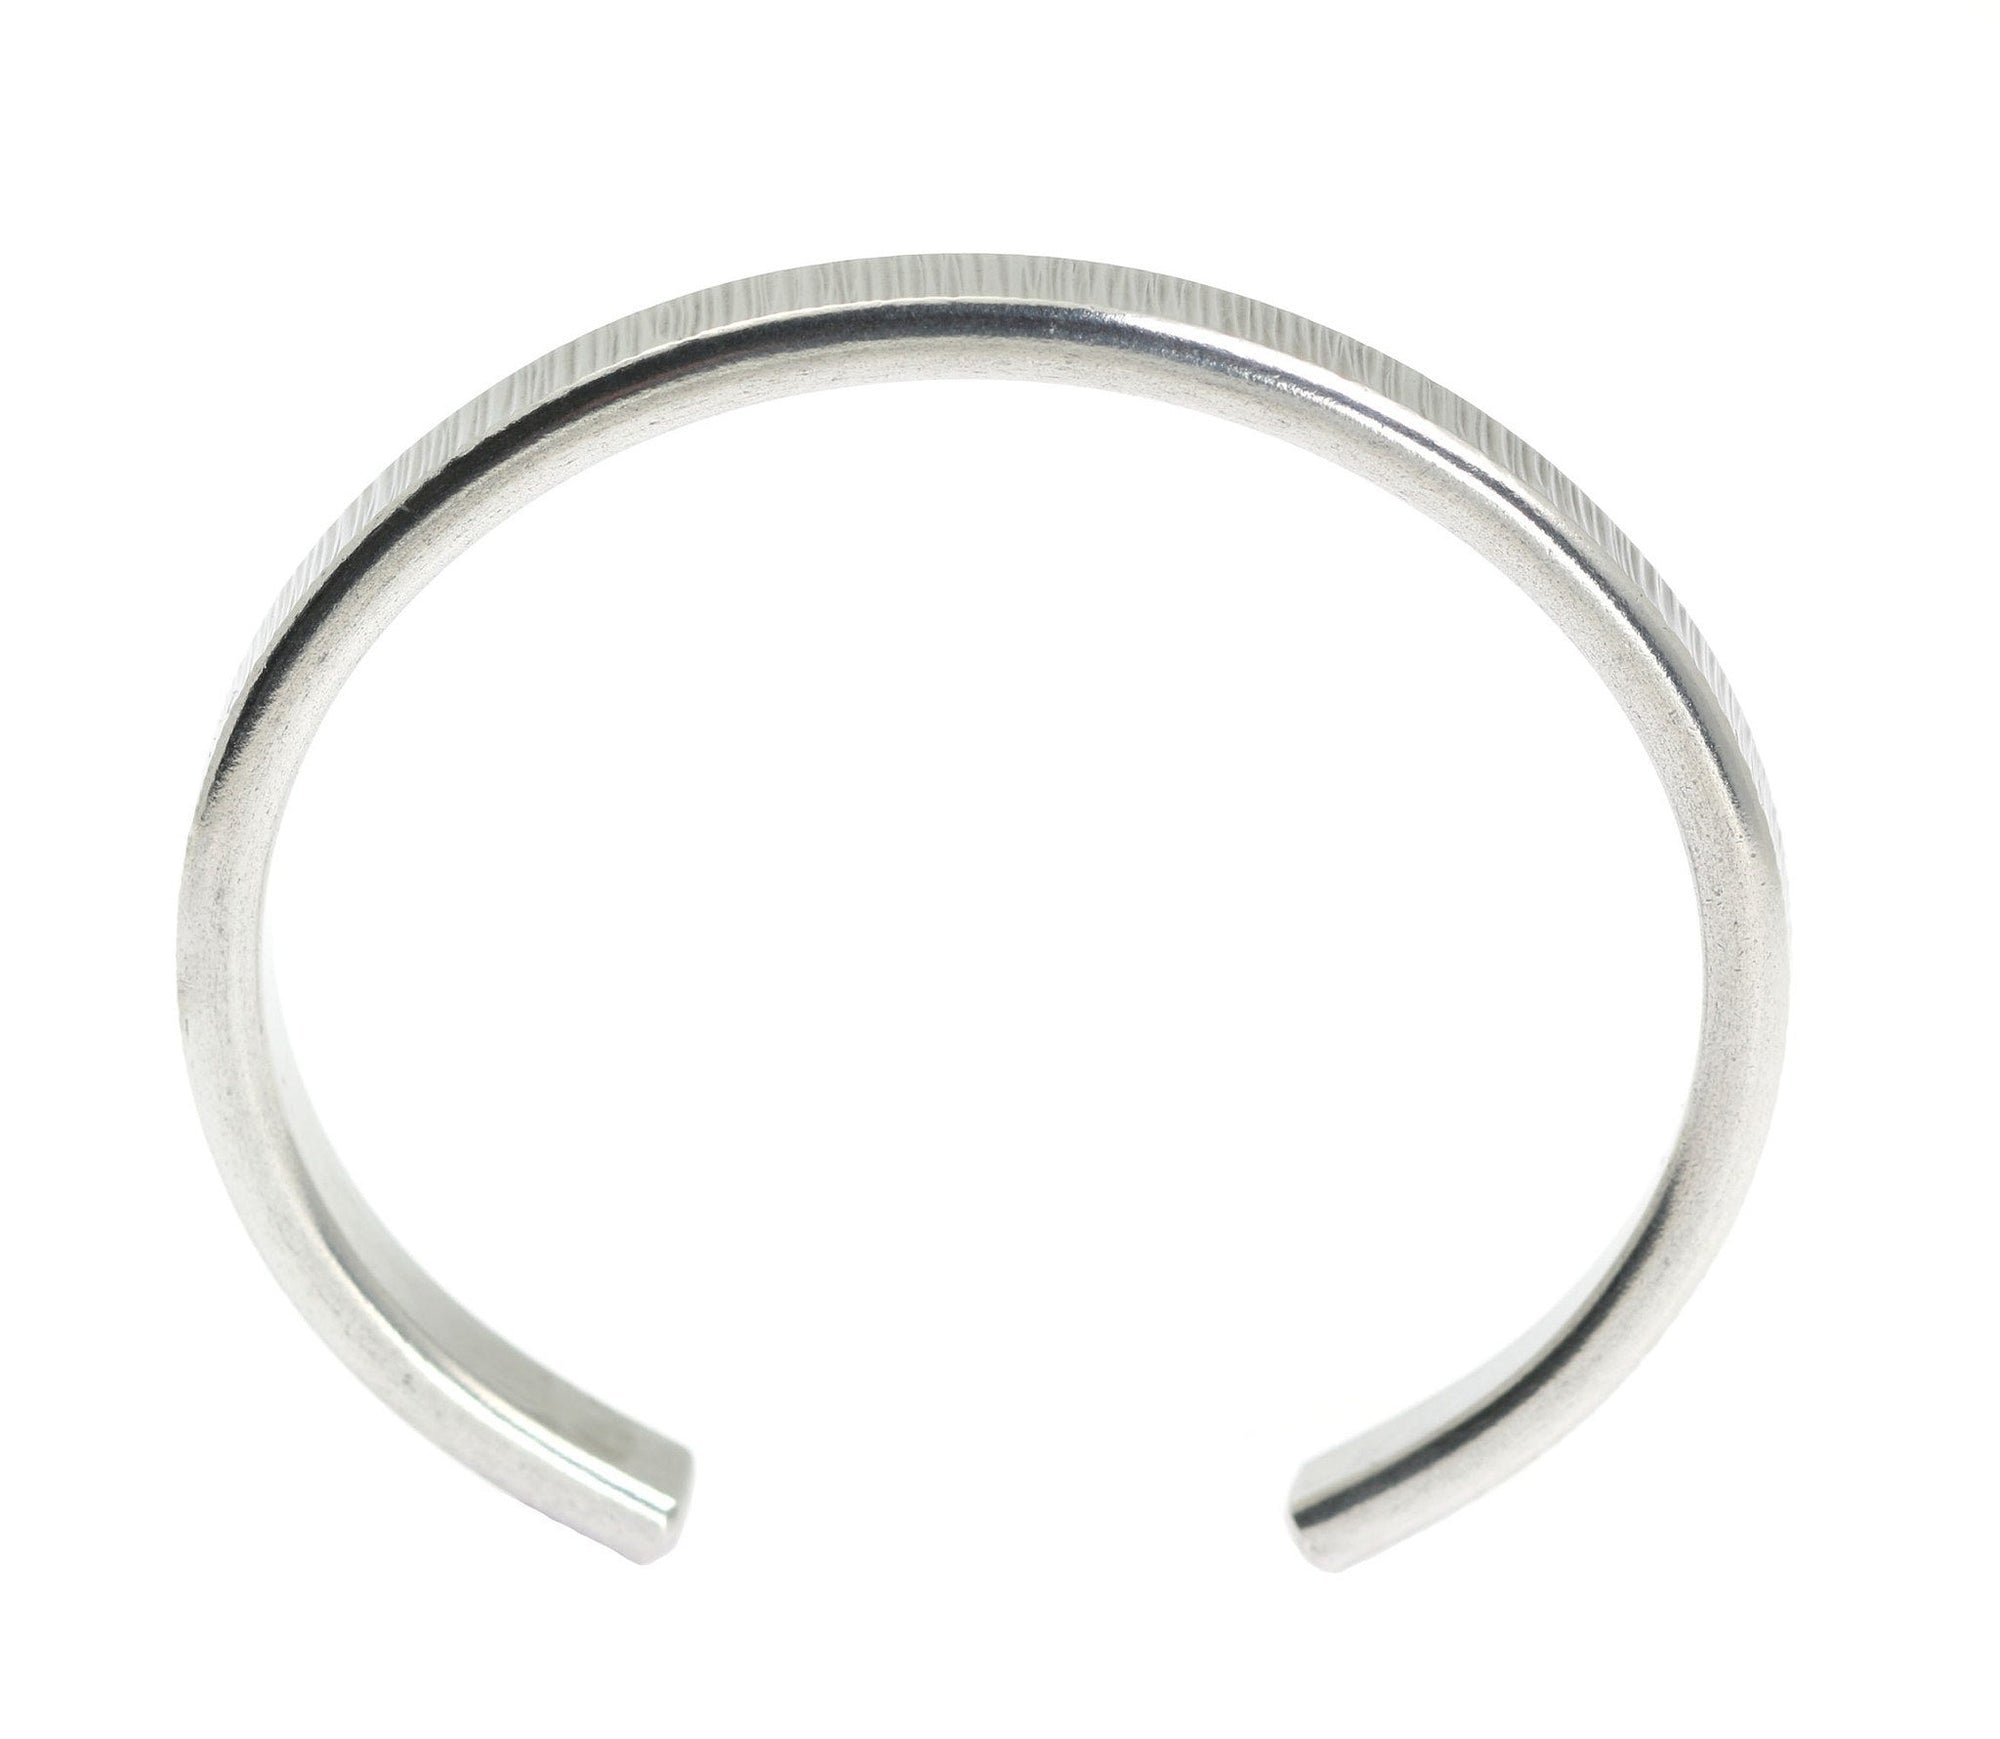 Shape of Thin Chased Aluminum Cuff Bracelet